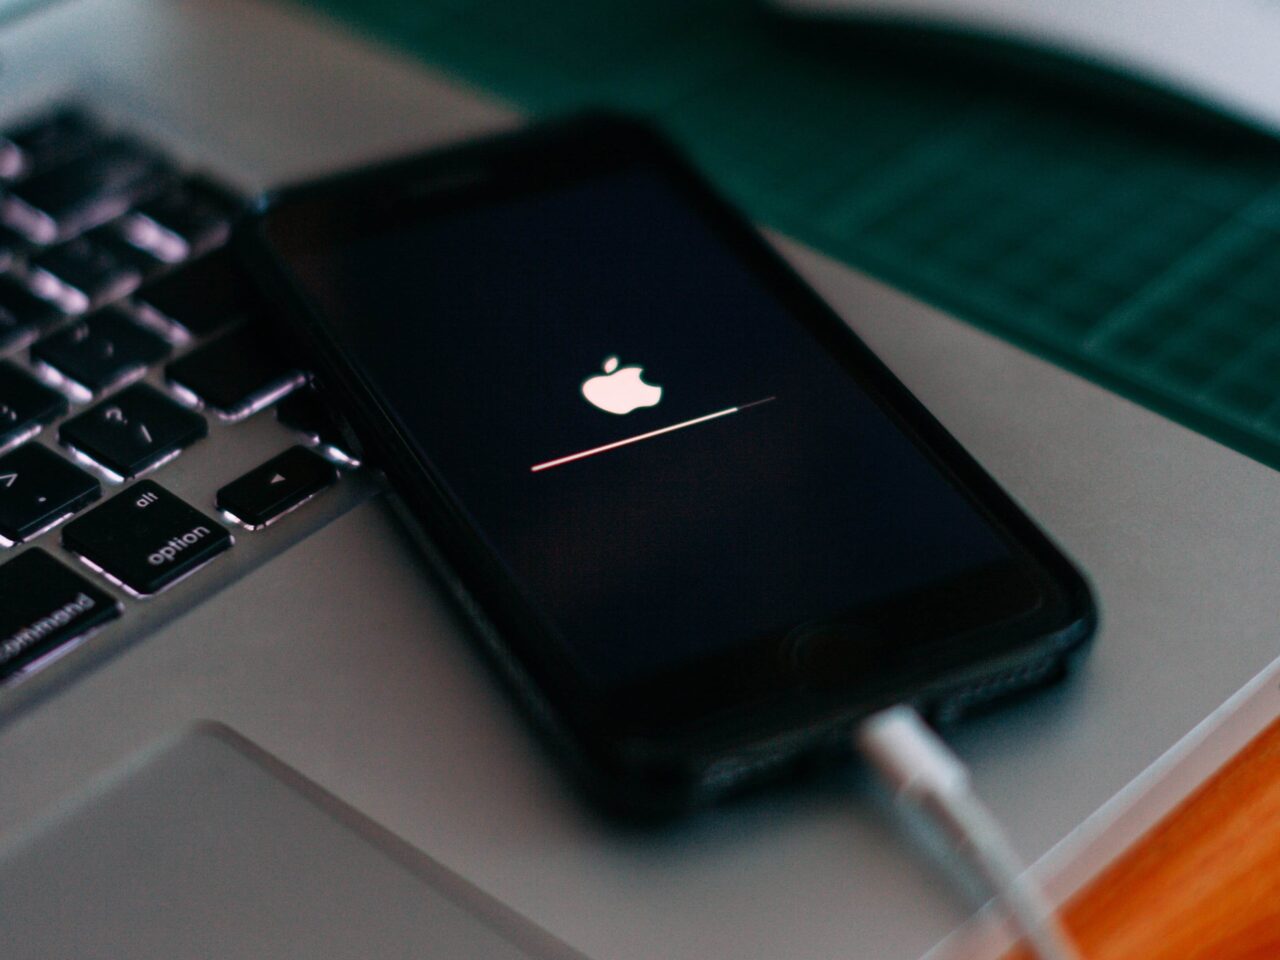 Czarny smartfon leżący na klawiaturze laptopa, wyświetlany jest ekran ładowania systemu z logo Apple. Bateria się ładuje